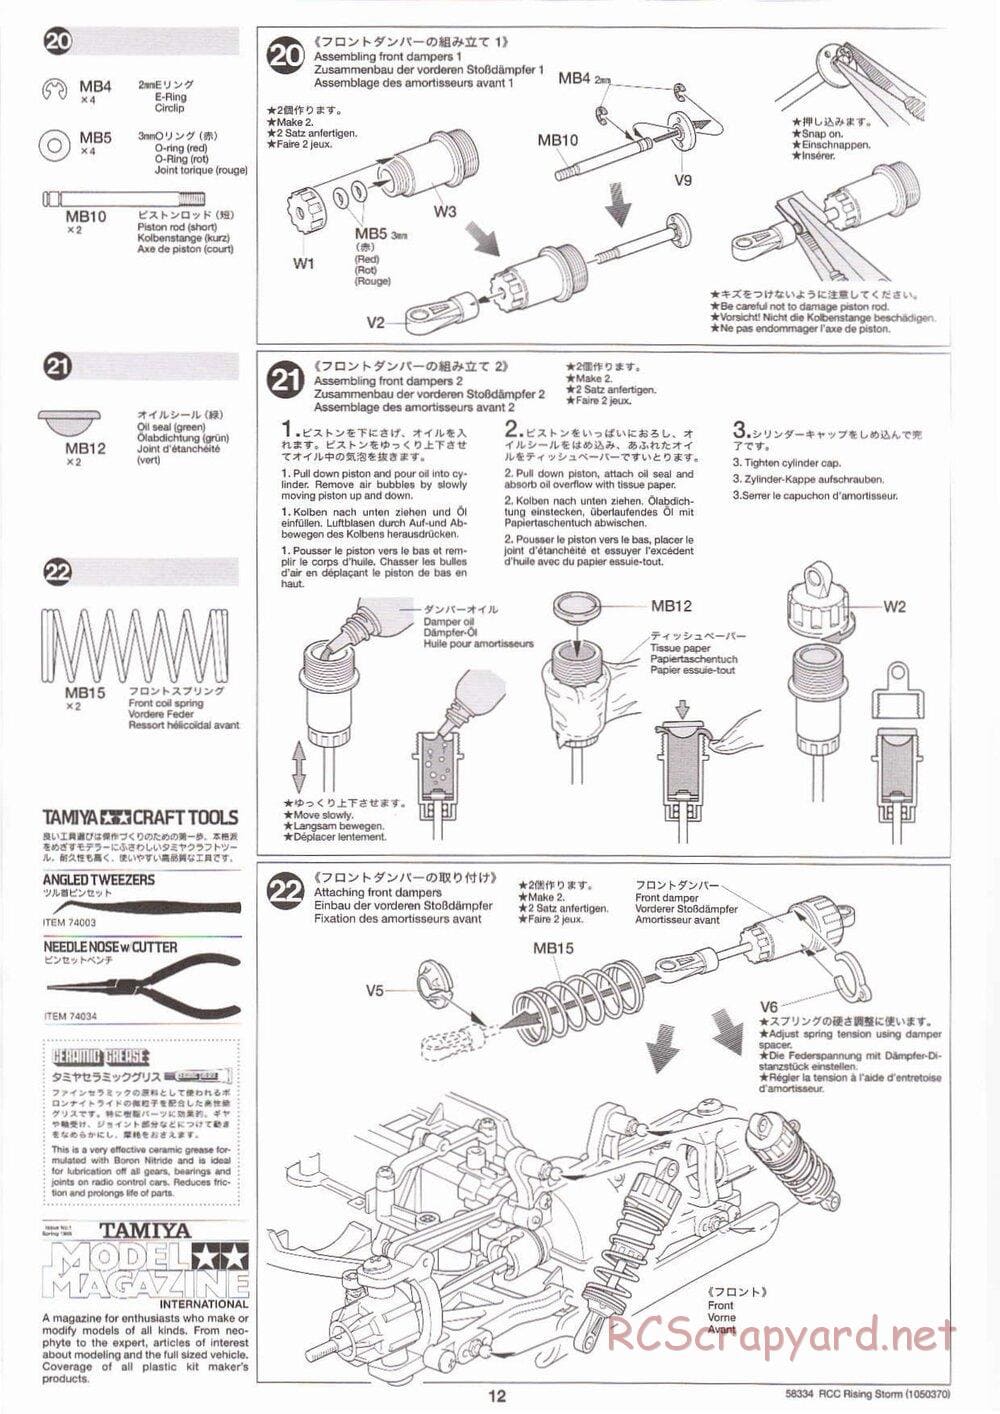 Tamiya - Rising Storm Chassis - Manual - Page 12